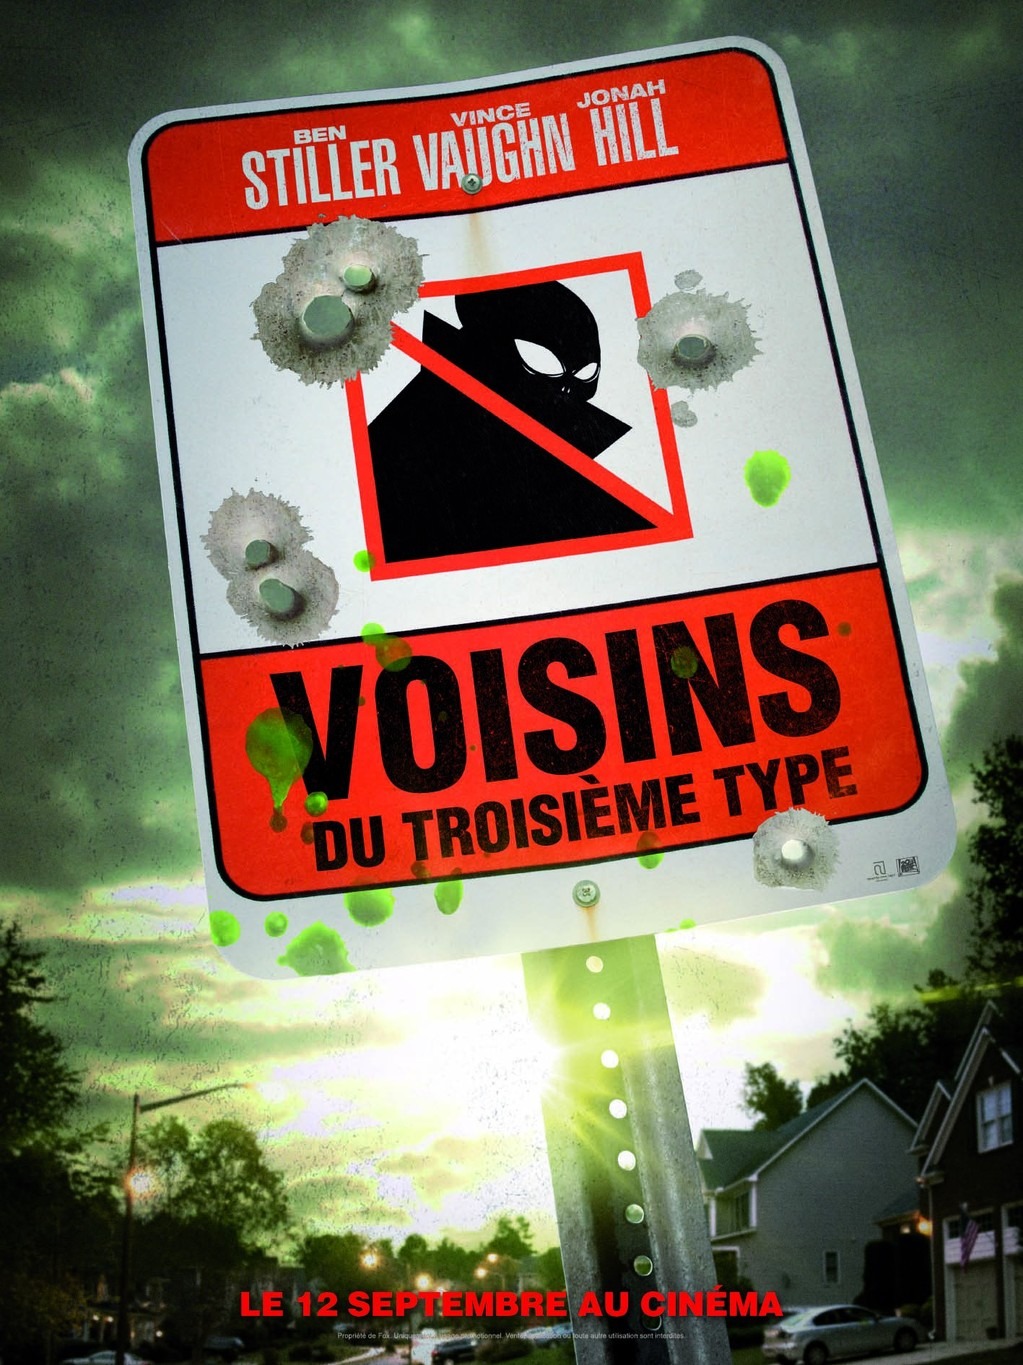 stiller vaughn film voisins - Voisins du troisième type (2012) The Watch affiche1